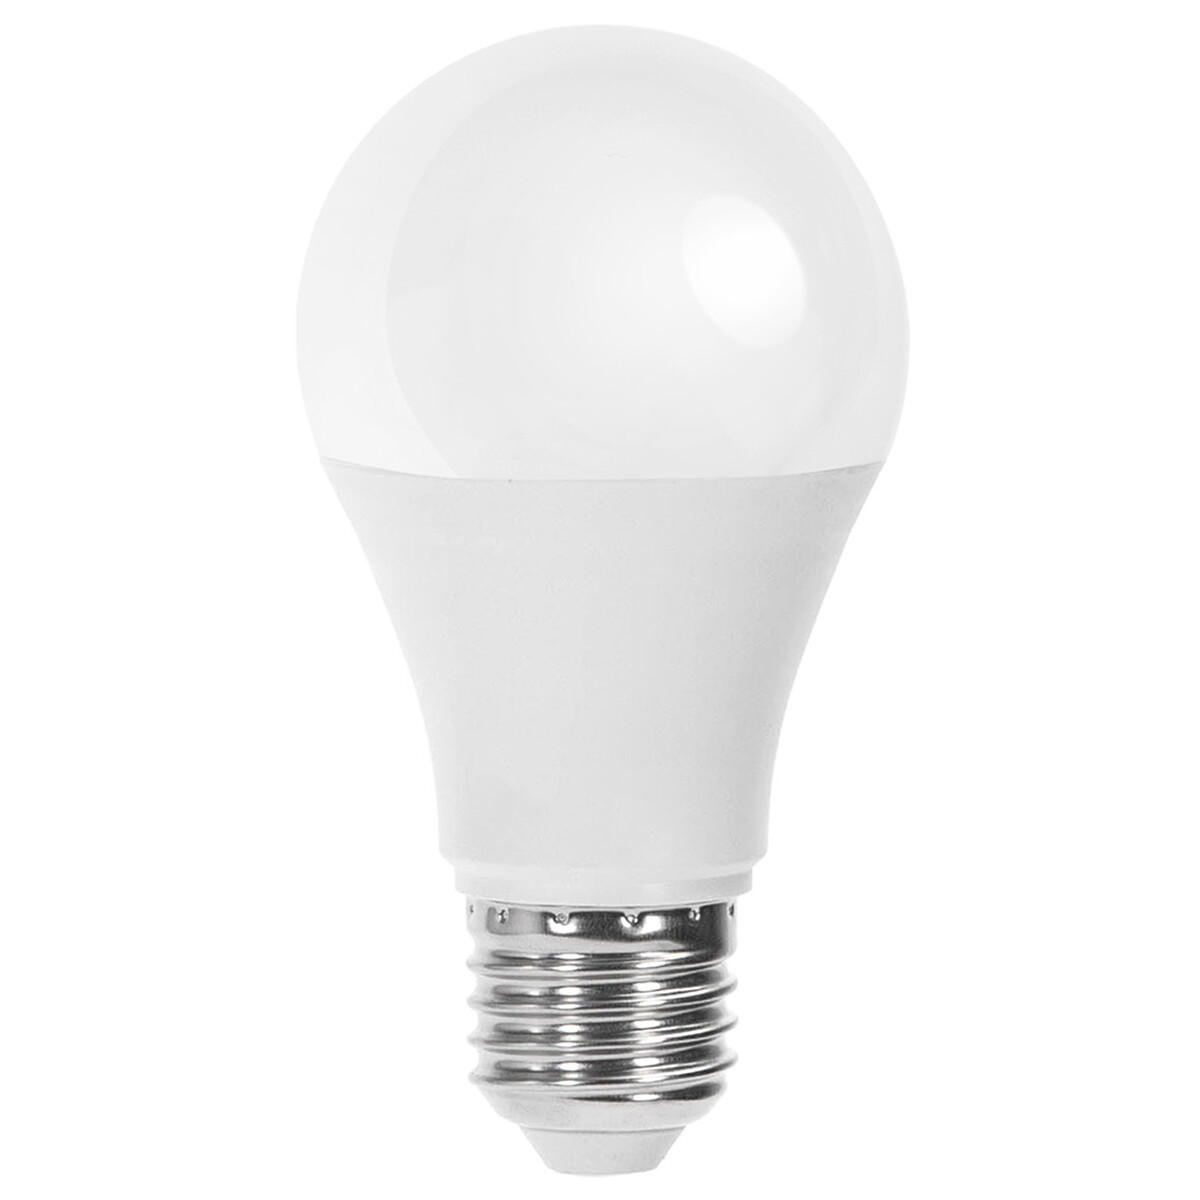 LED Lamp - E27 Fitting - 12W - Helder/Koud Wit 6500K